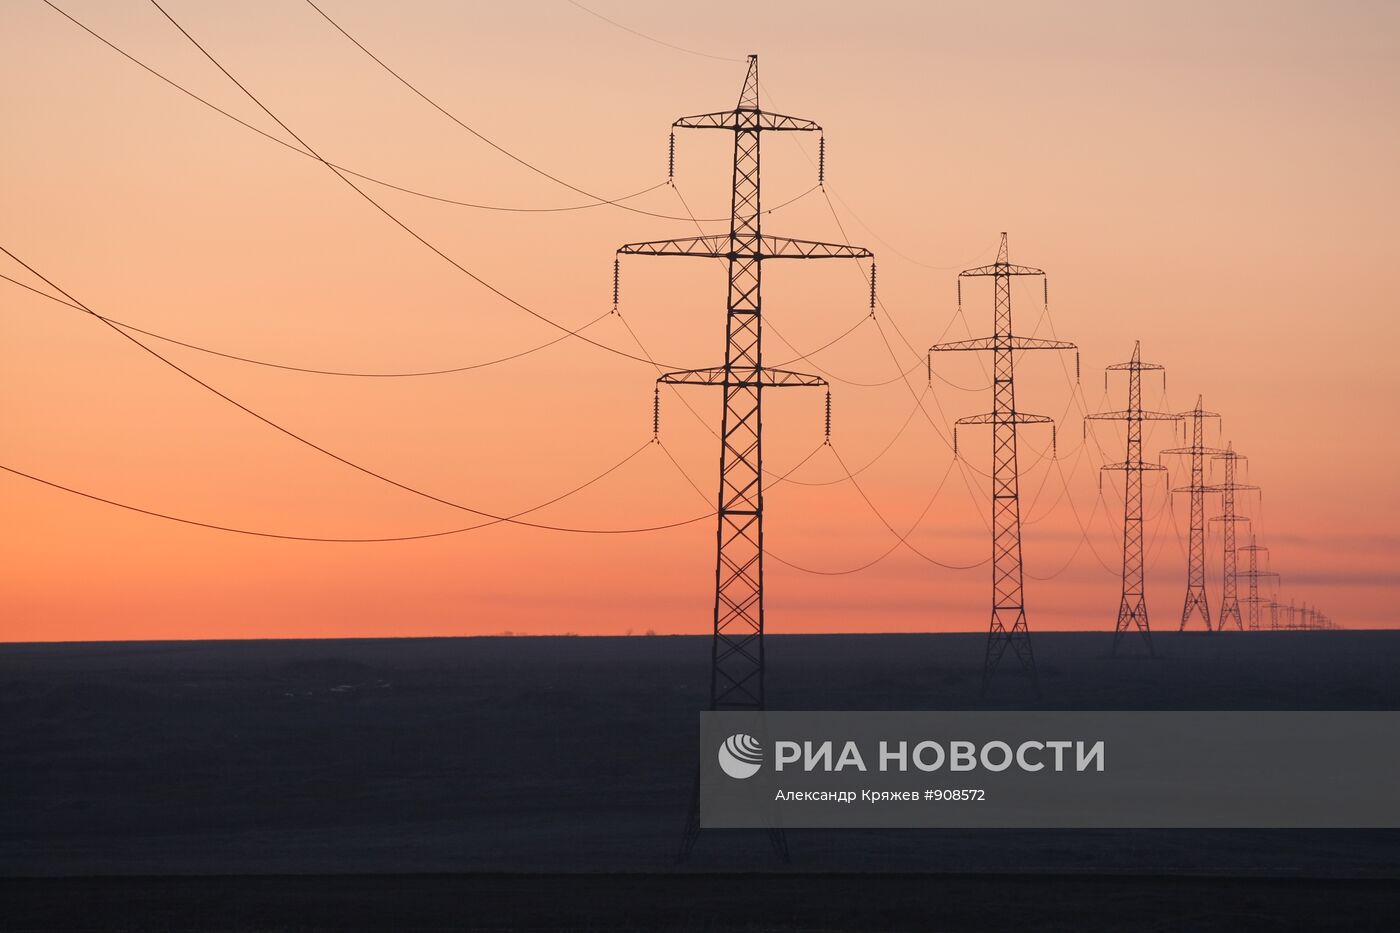 Линия электропередач в Ленинск-Кузнецком районе